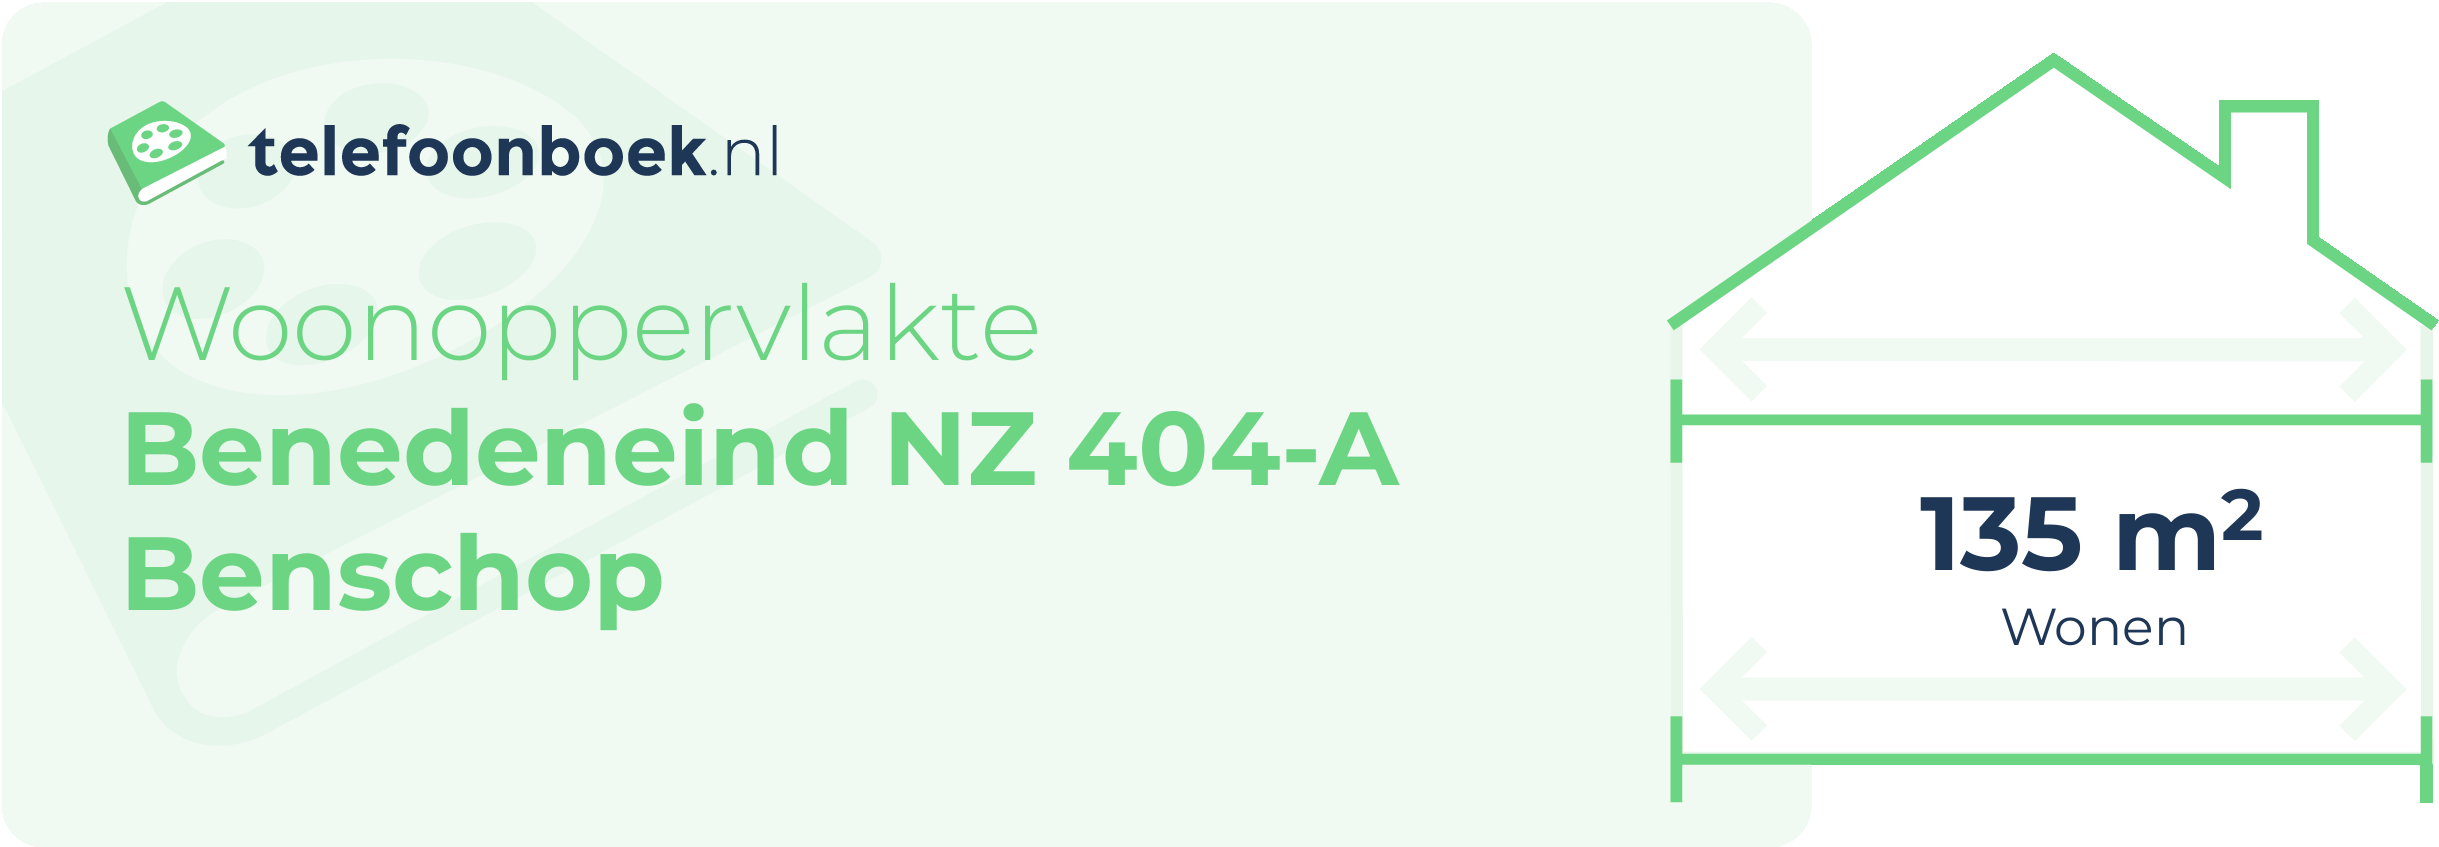 Woonoppervlakte Benedeneind NZ 404-A Benschop